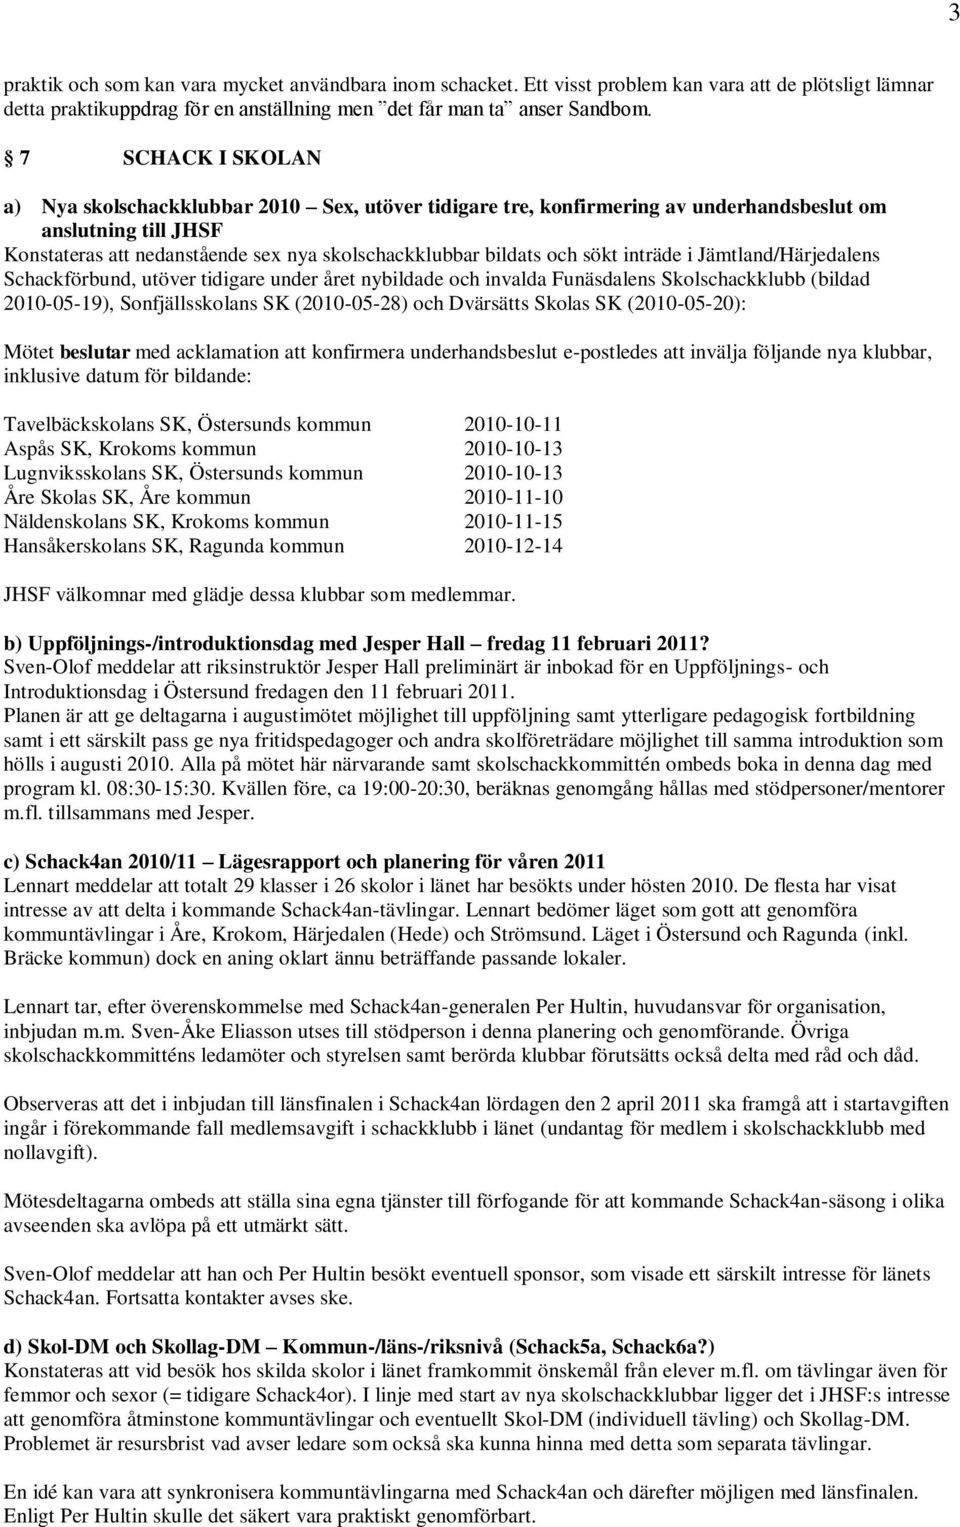 sökt inträde i Jämtland/Härjedalens Schackförbund, utöver tidigare under året nybildade och invalda Funäsdalens Skolschackklubb (bildad 2010-05-19), Sonfjällsskolans SK (2010-05-28) och Dvärsätts